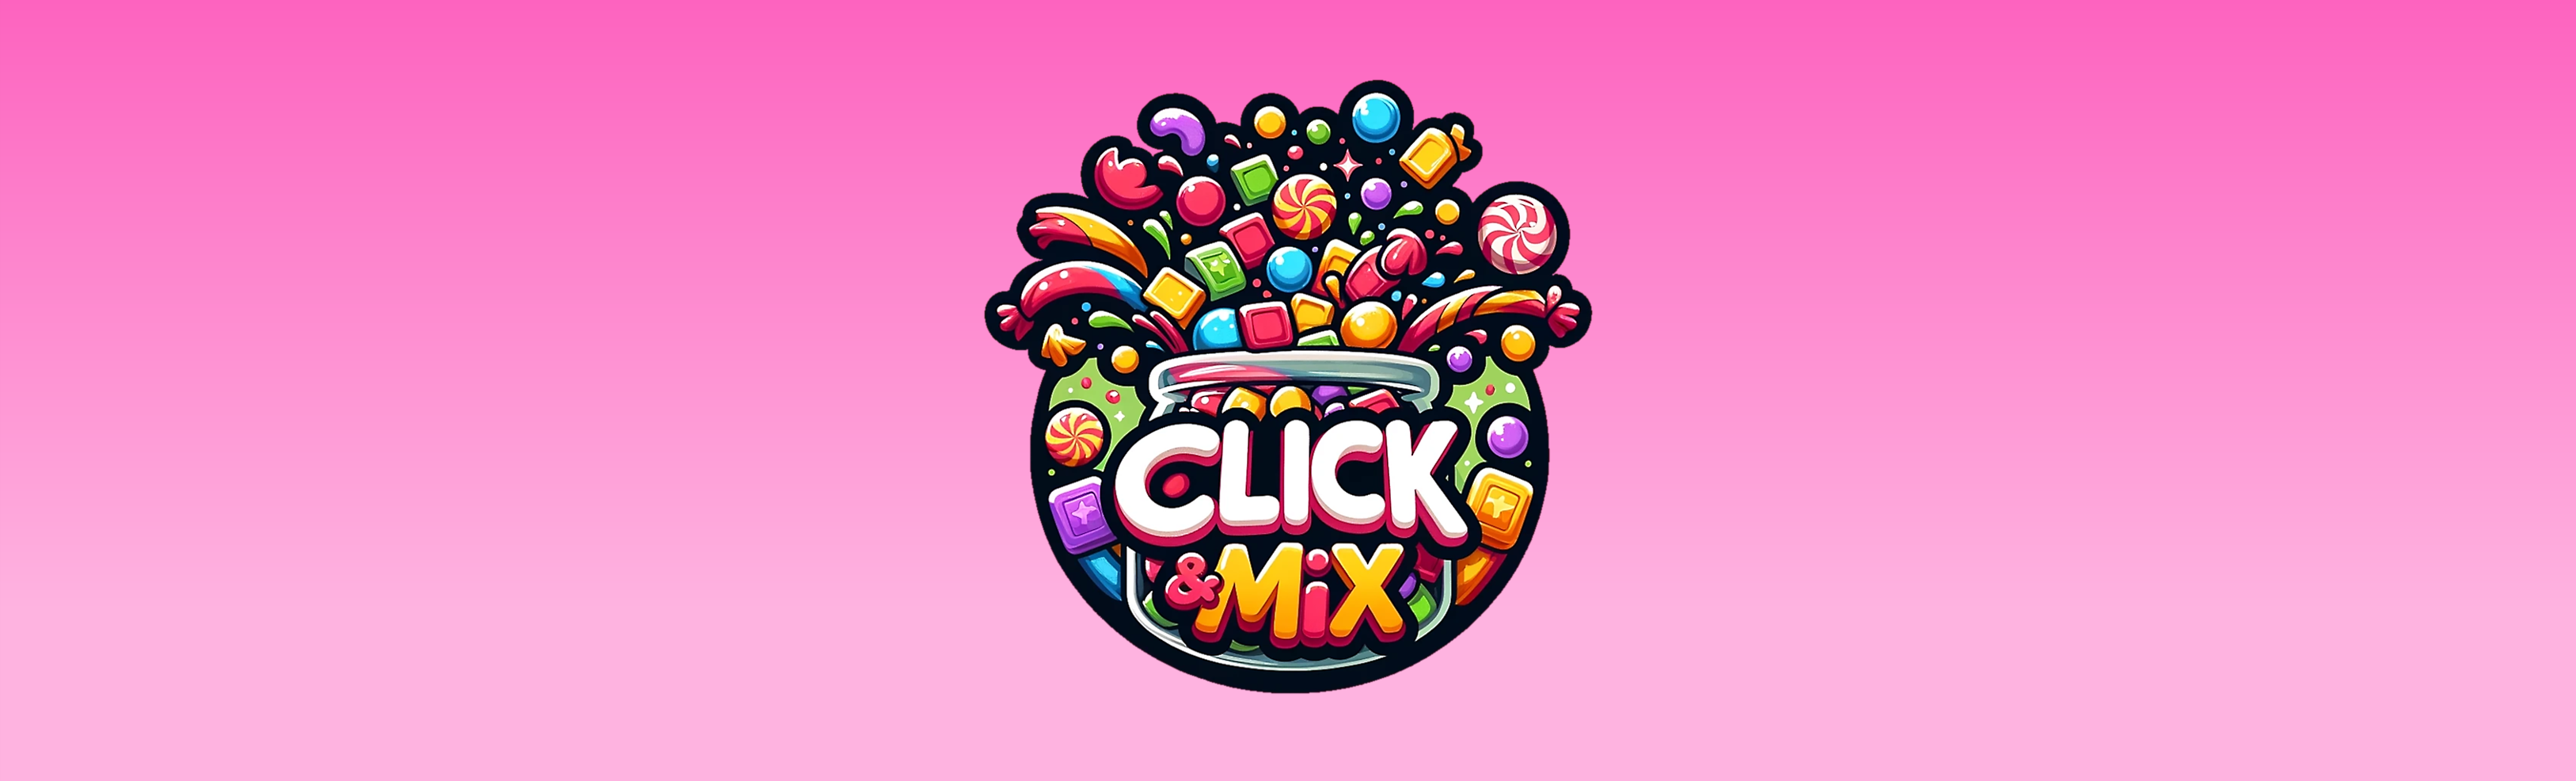 Click & Mix